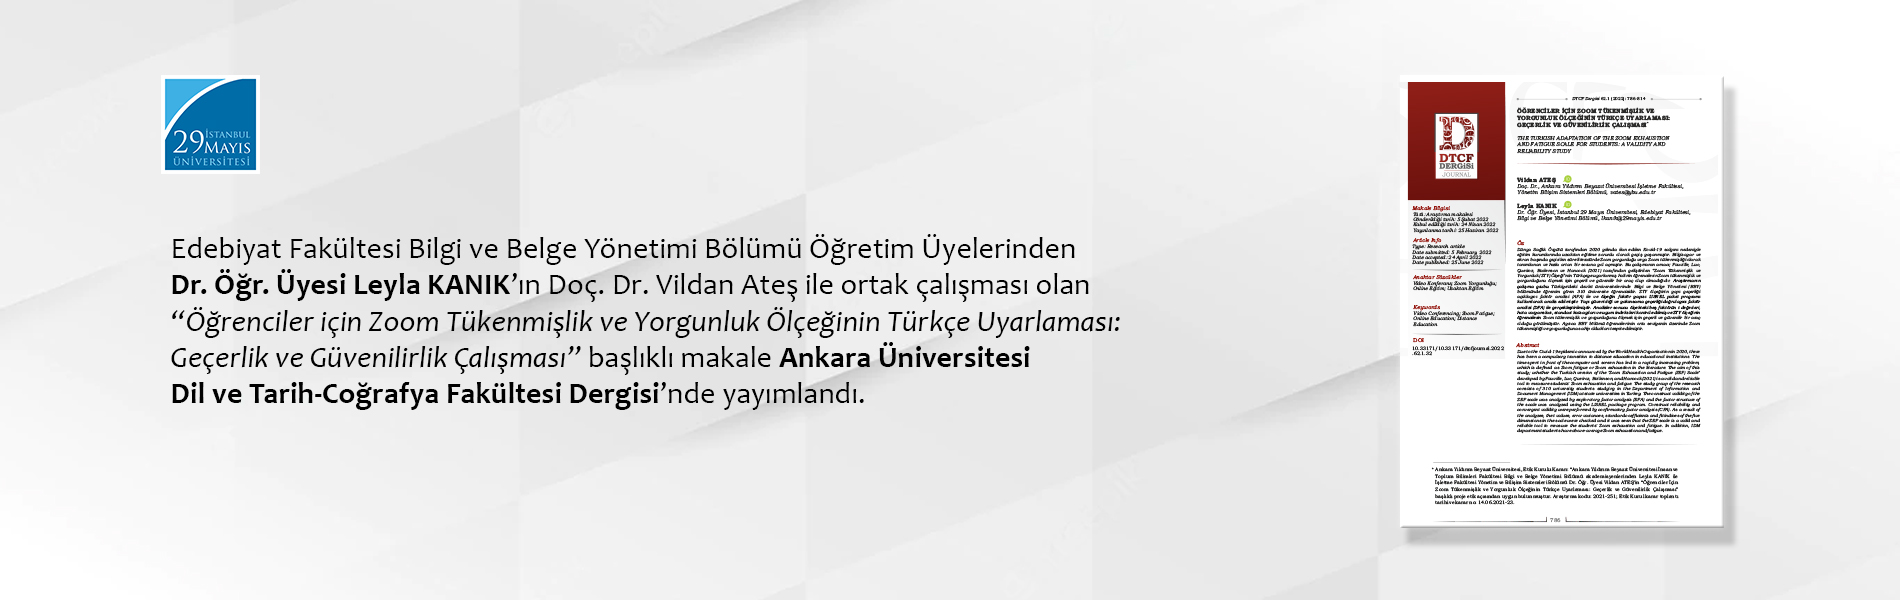 Dr. Öğr. Üyesi Leyla KANIK’ın Doç. Dr. Vildan Ateş ile Ortak Çalışması Ankara Üniversitesi Dil ve Tarih-Coğrafya Fakültesi Dergisi’nde Yayımlandı